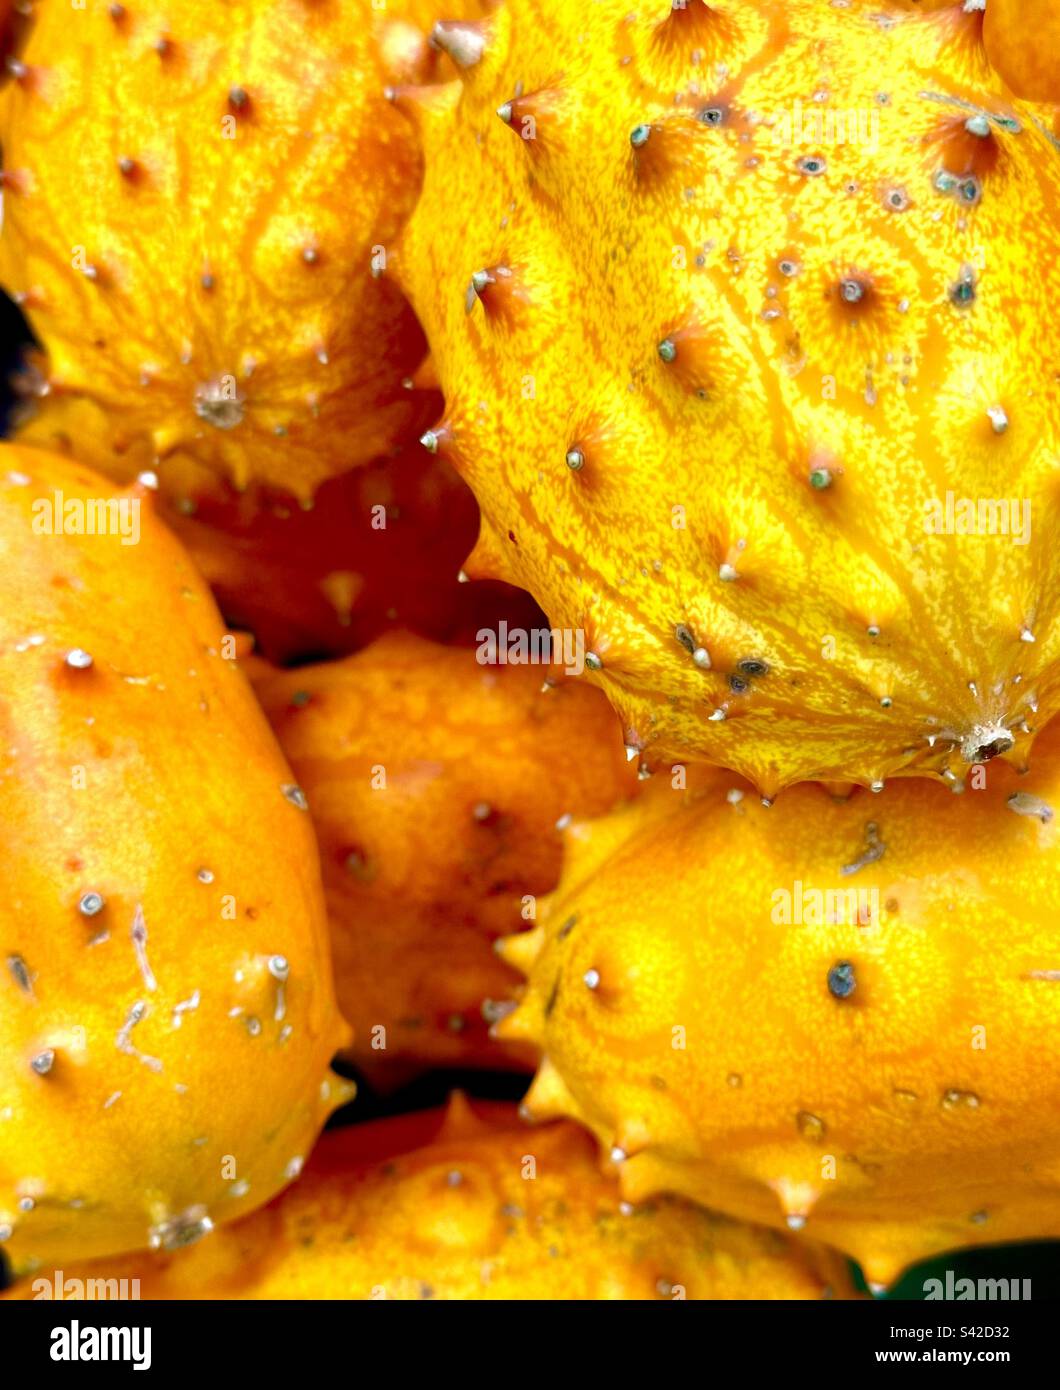 Yellow dragon fruit Stock Photo